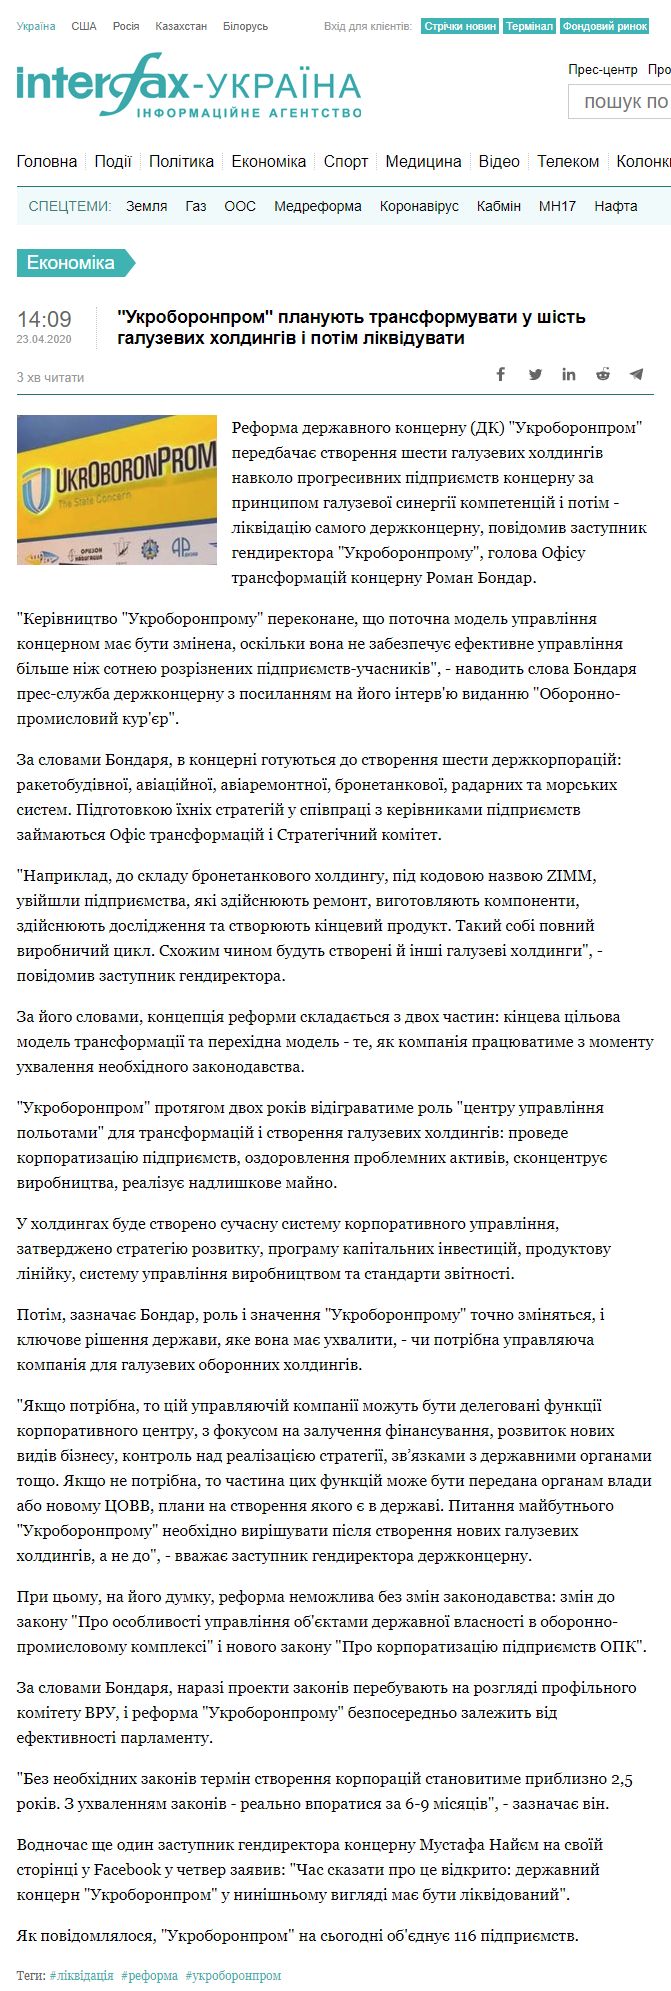 https://ua.interfax.com.ua/news/economic/657150.html